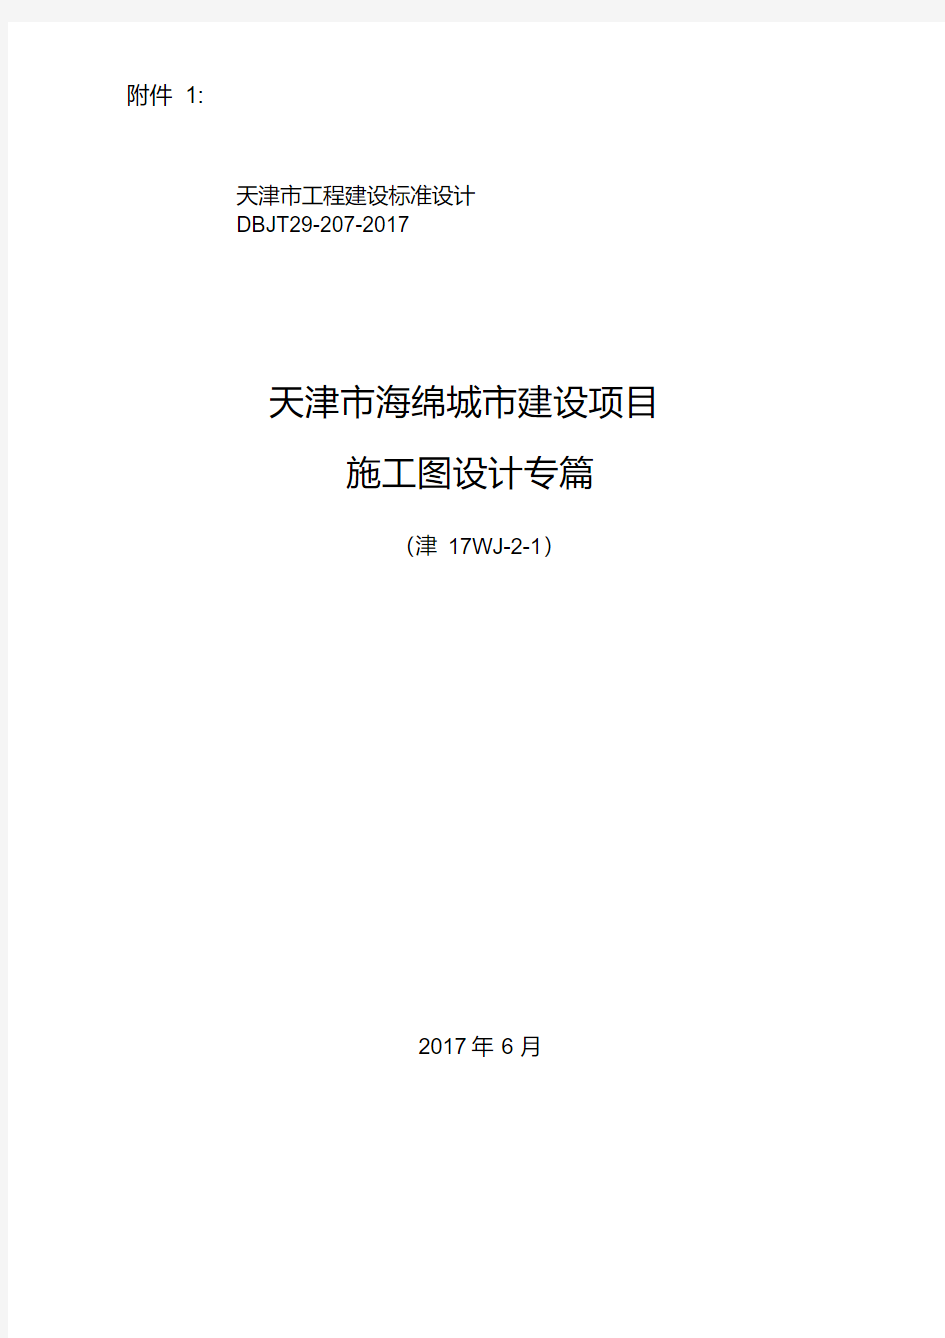 天津市海绵城市建设项目施工图设计专篇.pdf